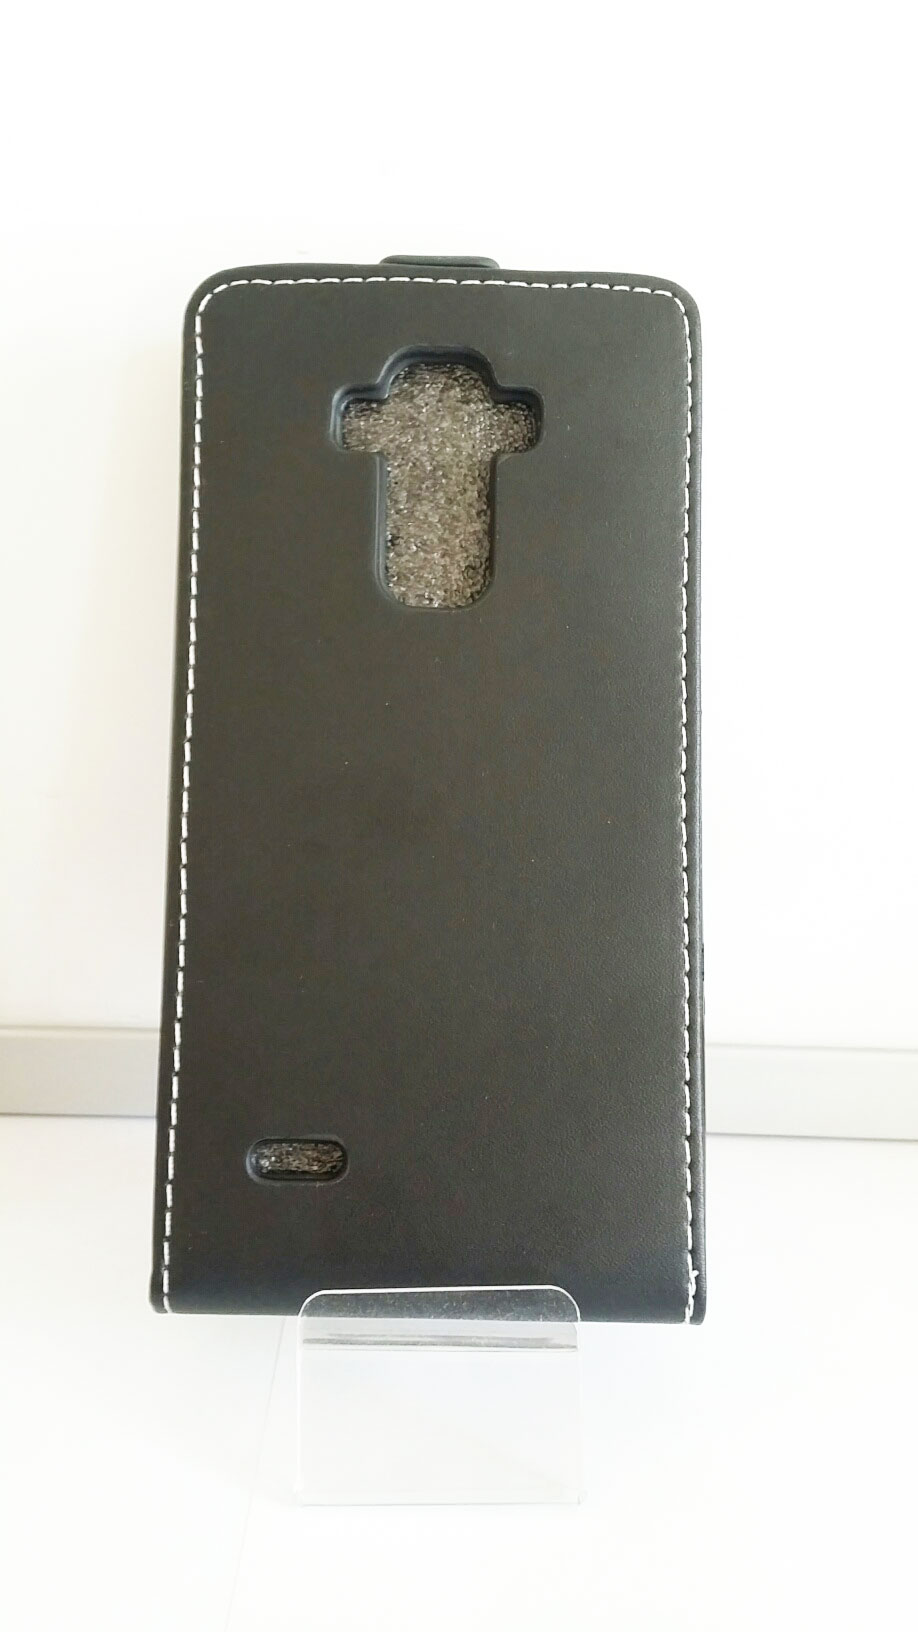 Flipové pouzdro Forcell pro mobil LG G4 STYLUS (H635) černý odstín Luxury